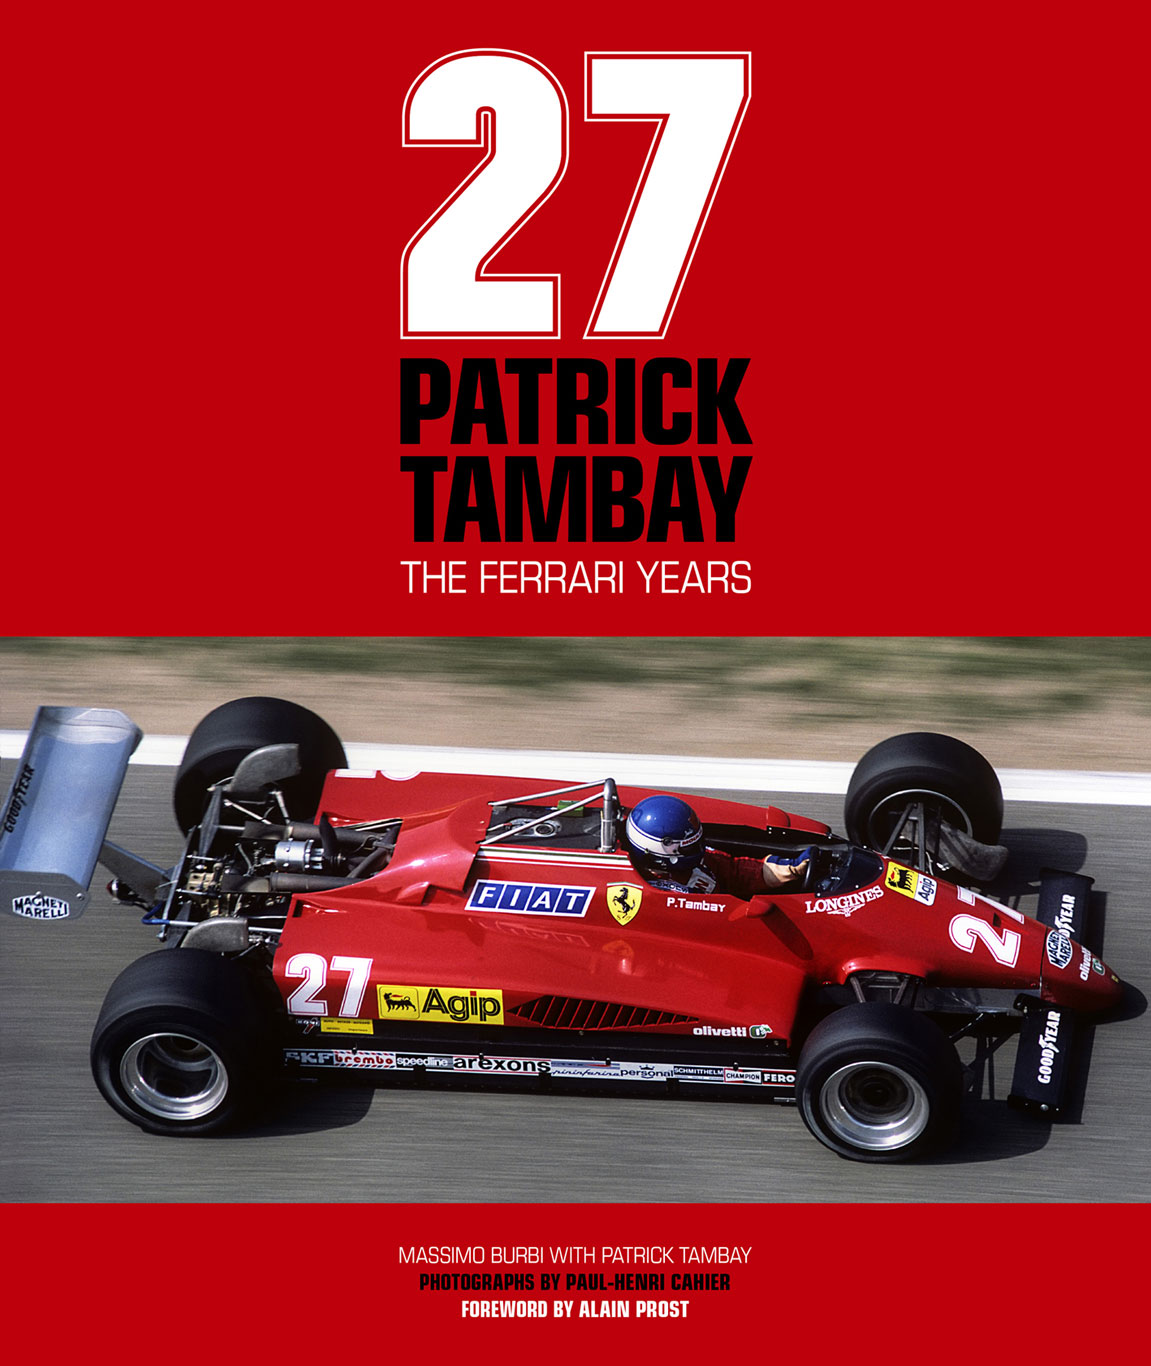 27: Patrick Tambay, The Ferrari Years